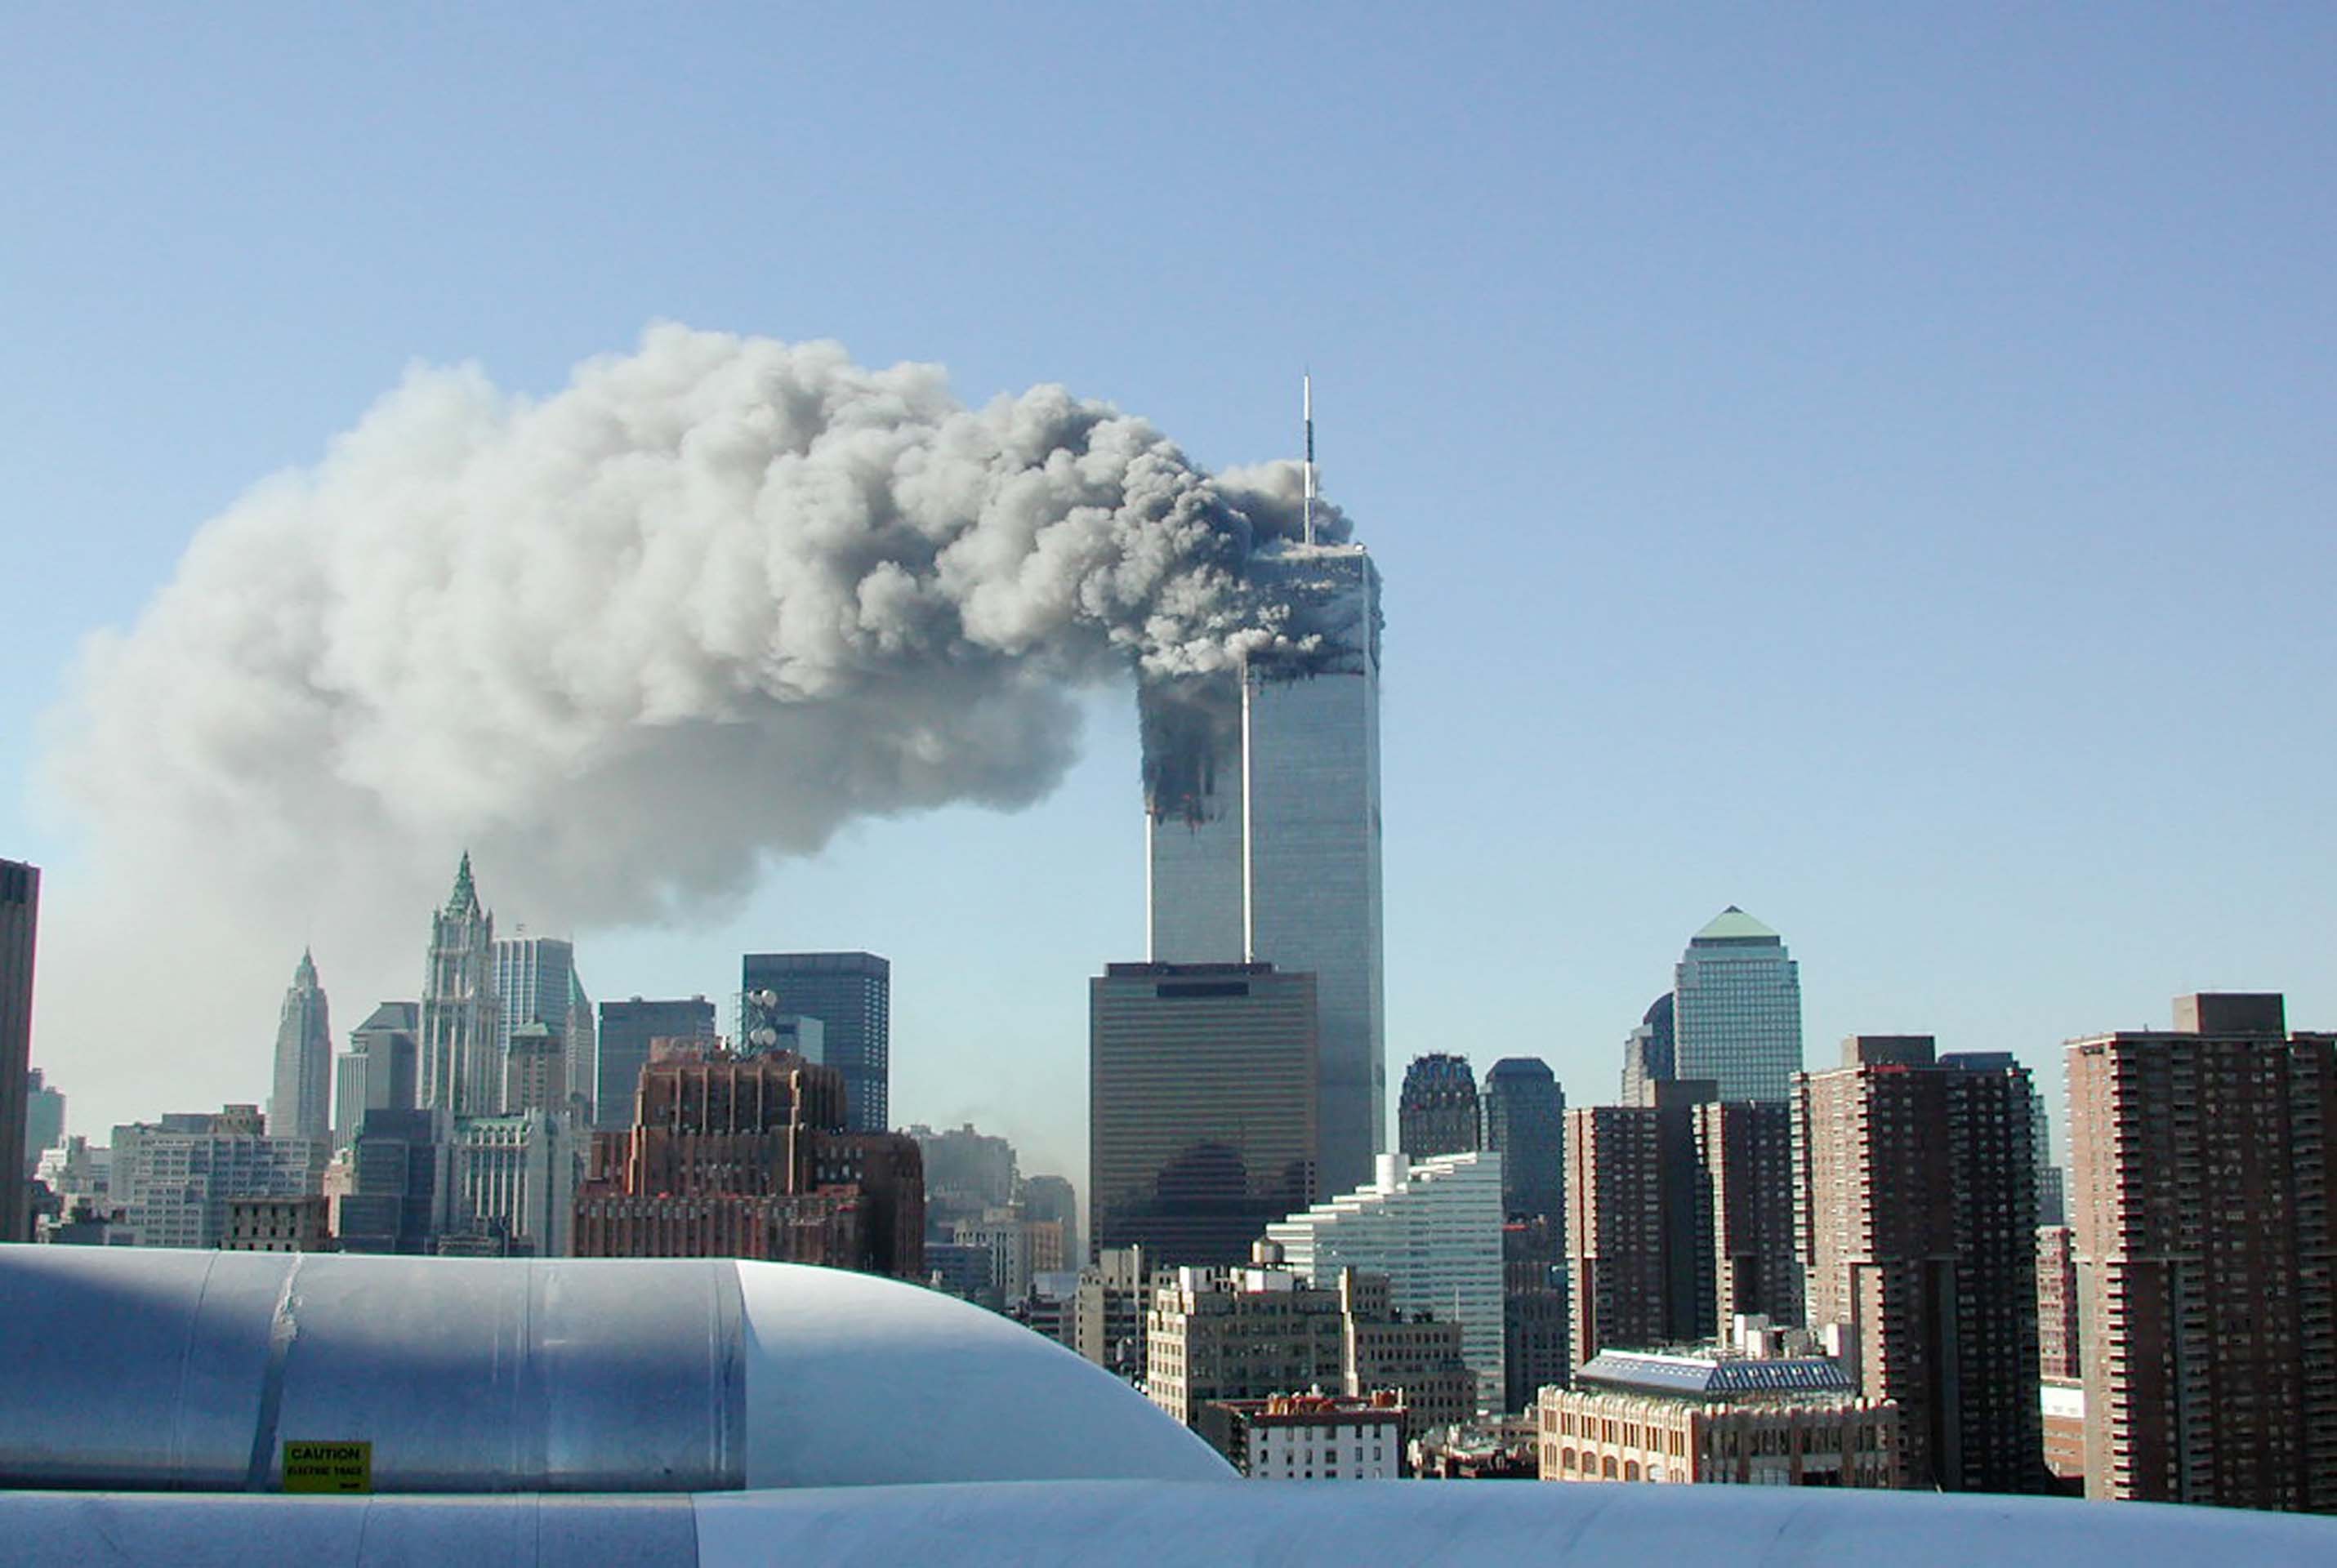 El atentado del 9 de septiembre del 2001 contra las torres gemelas reconfiguró los controles de seguridad aeroportuaria en todo el mundo. (Photo by Fabina Sbina/ Hugh Zareasky/Getty Images)